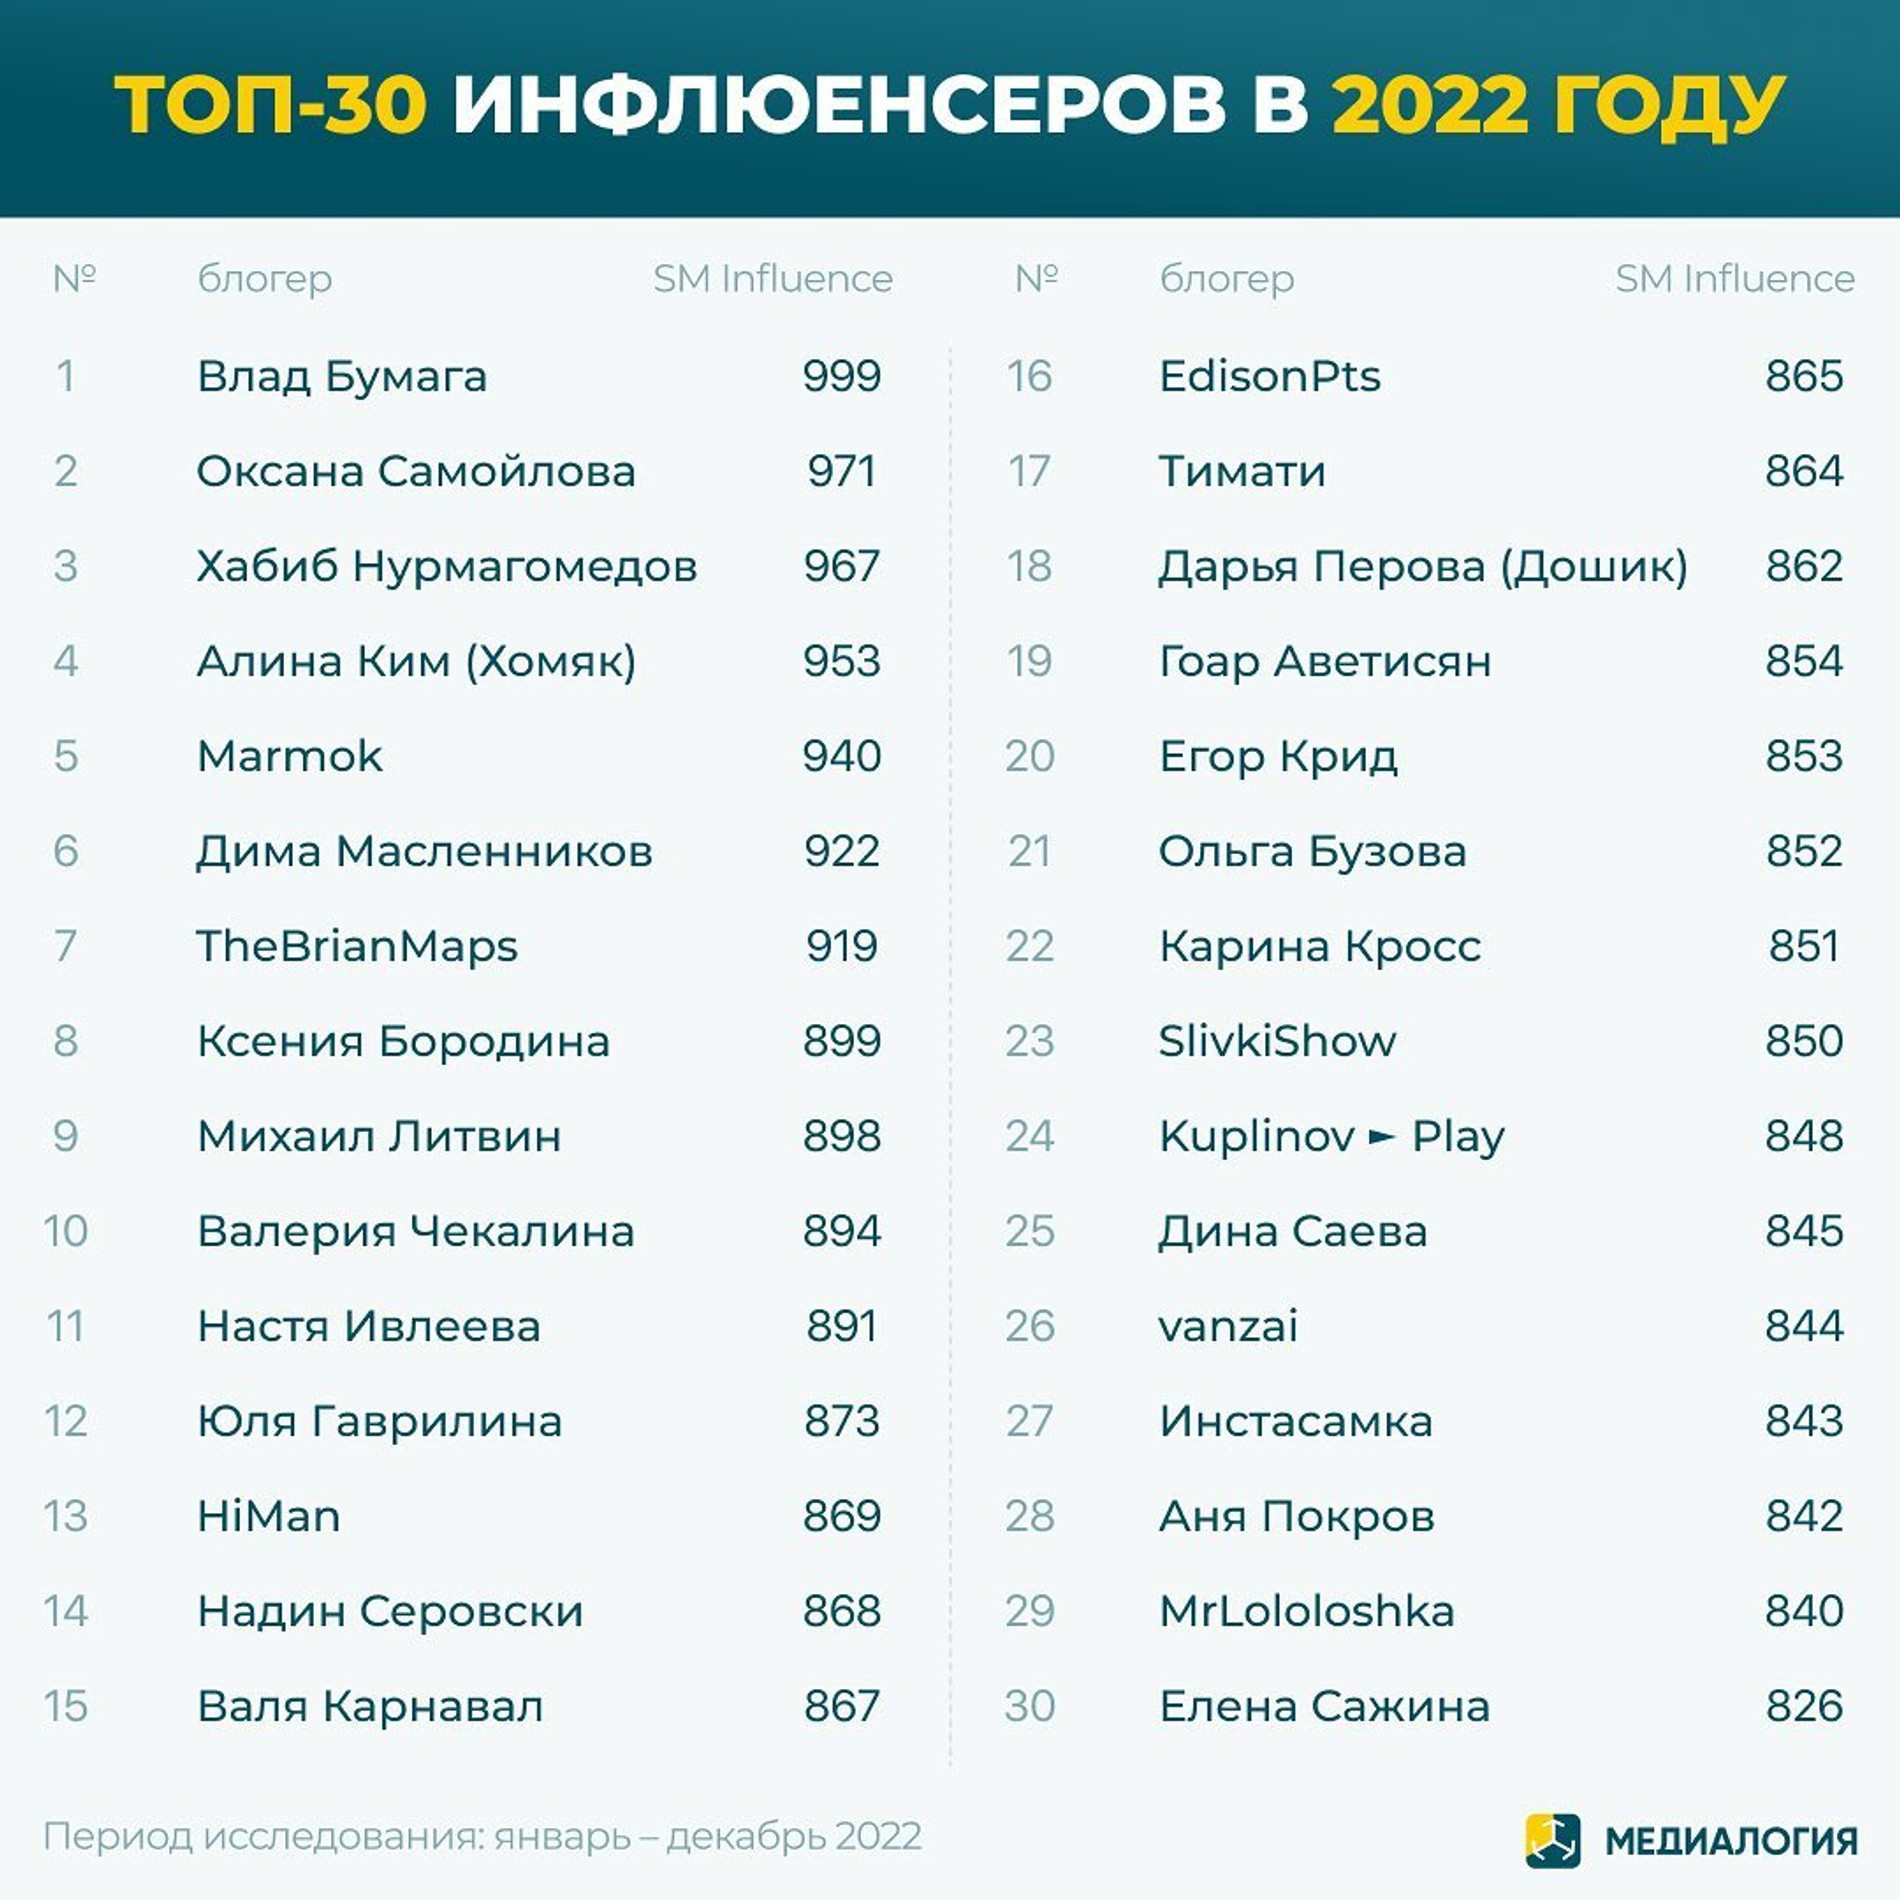 Топ-30 инфлюенсеров в 2022 году
Фото: Инстаграм (запрещен в РФ) / @medialogia